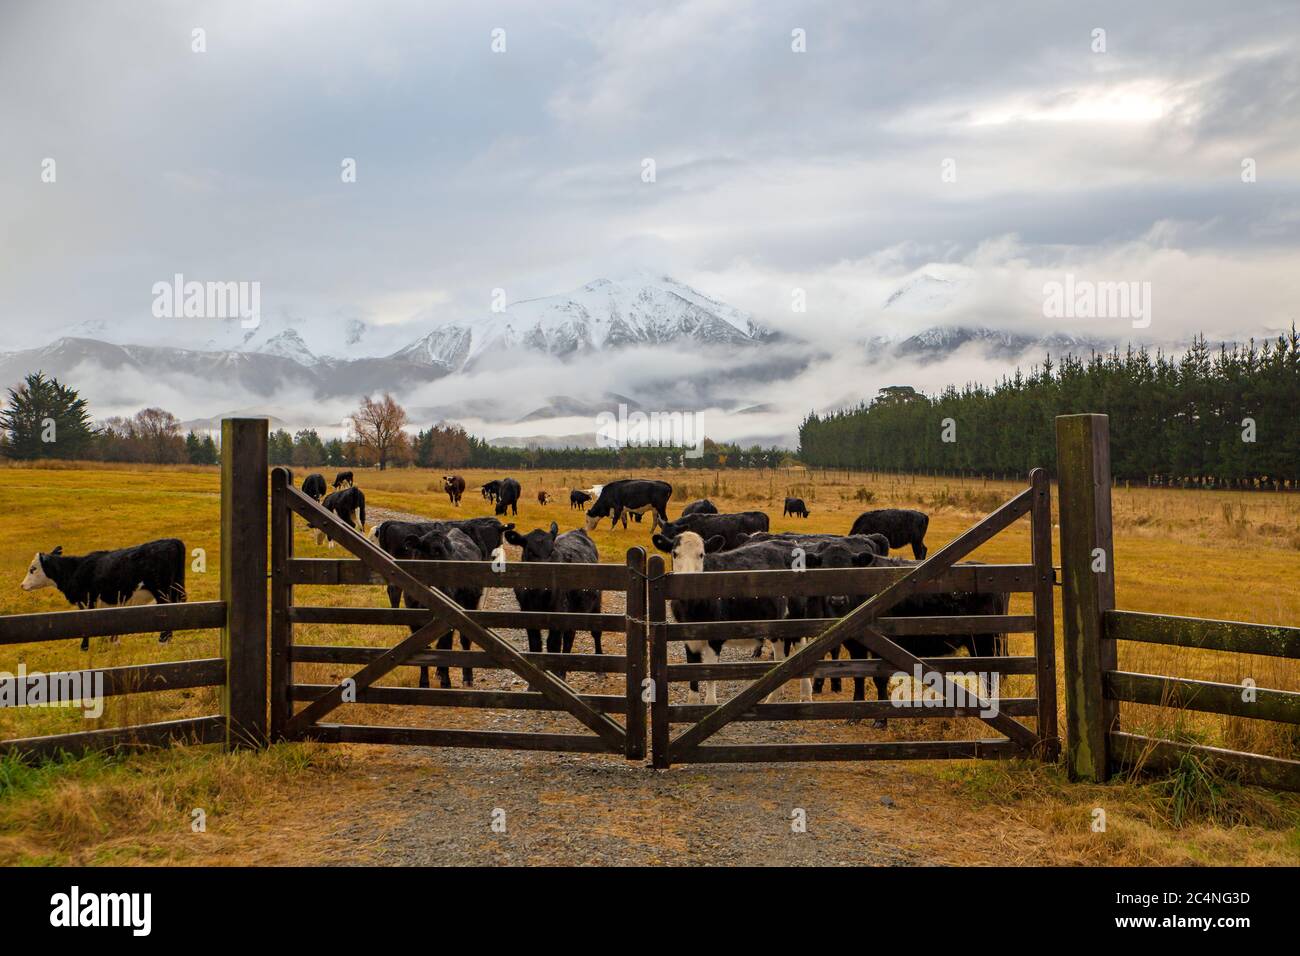 Una piovosa, scenario agricolo invernale in Nuova Zelanda, con bestiame dietro un cancello di fattoria in legno e montagne innevate sullo sfondo Foto Stock